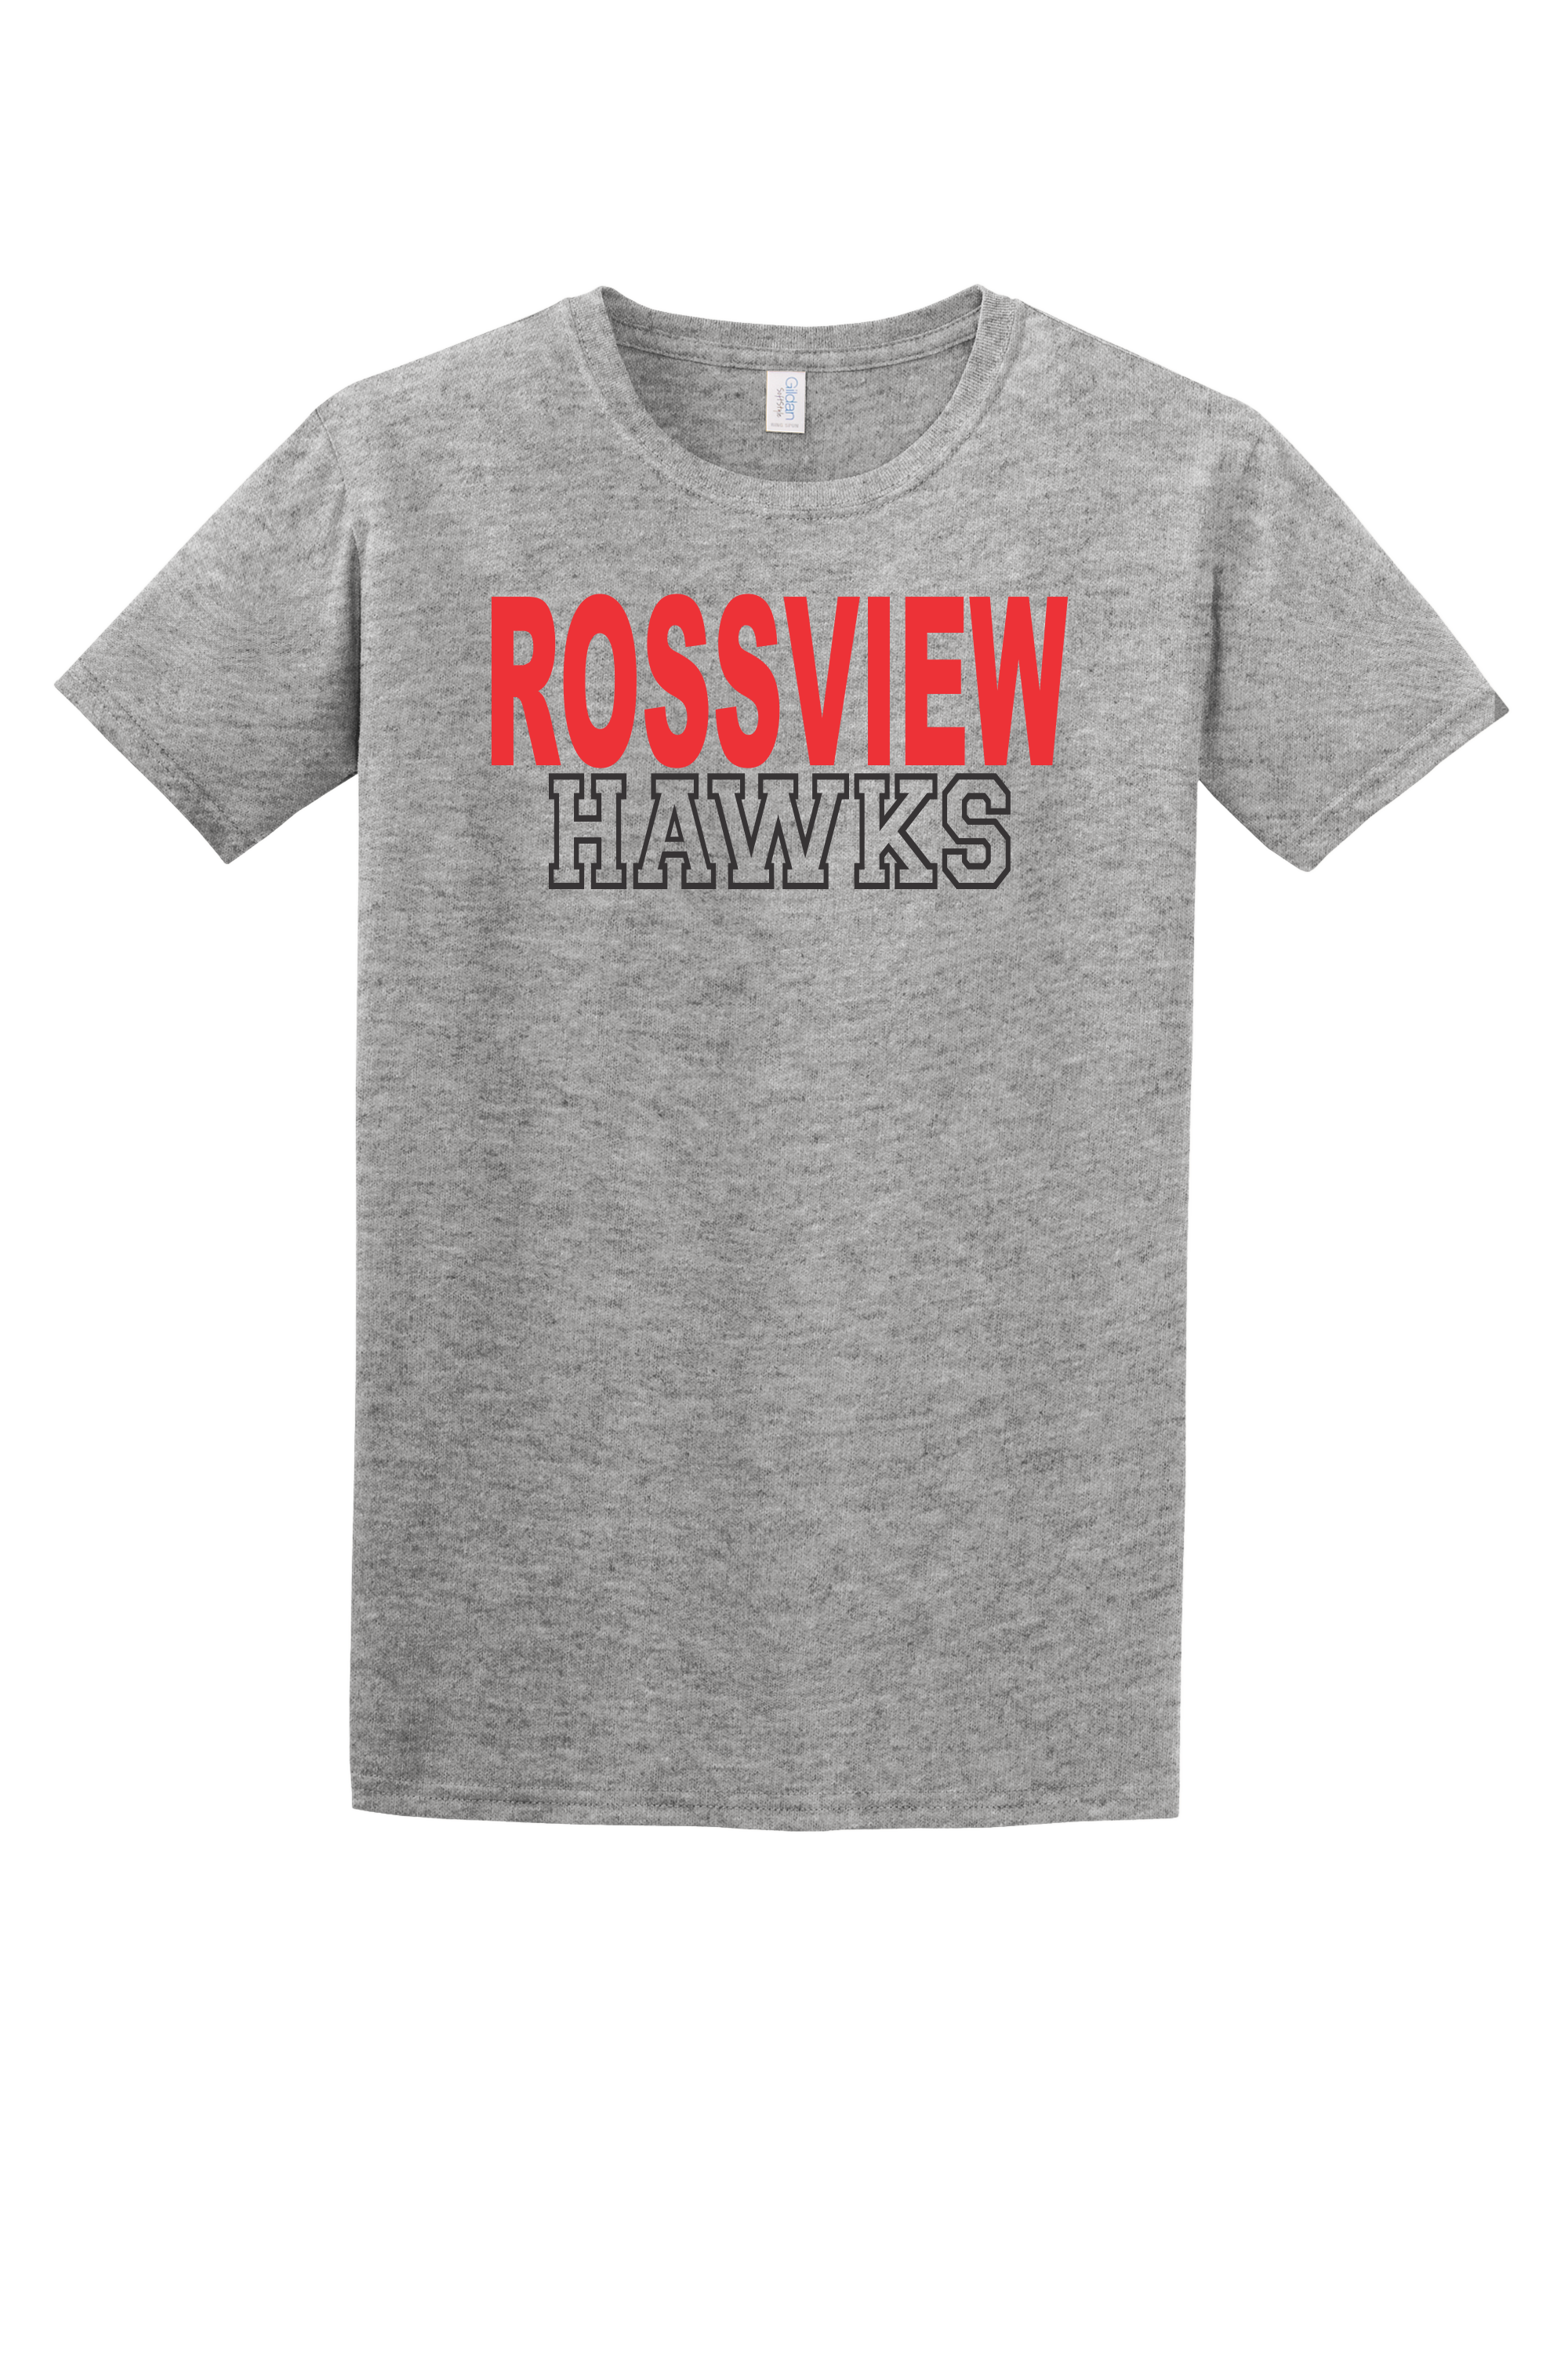 Rossview Hawks Tee (Block)